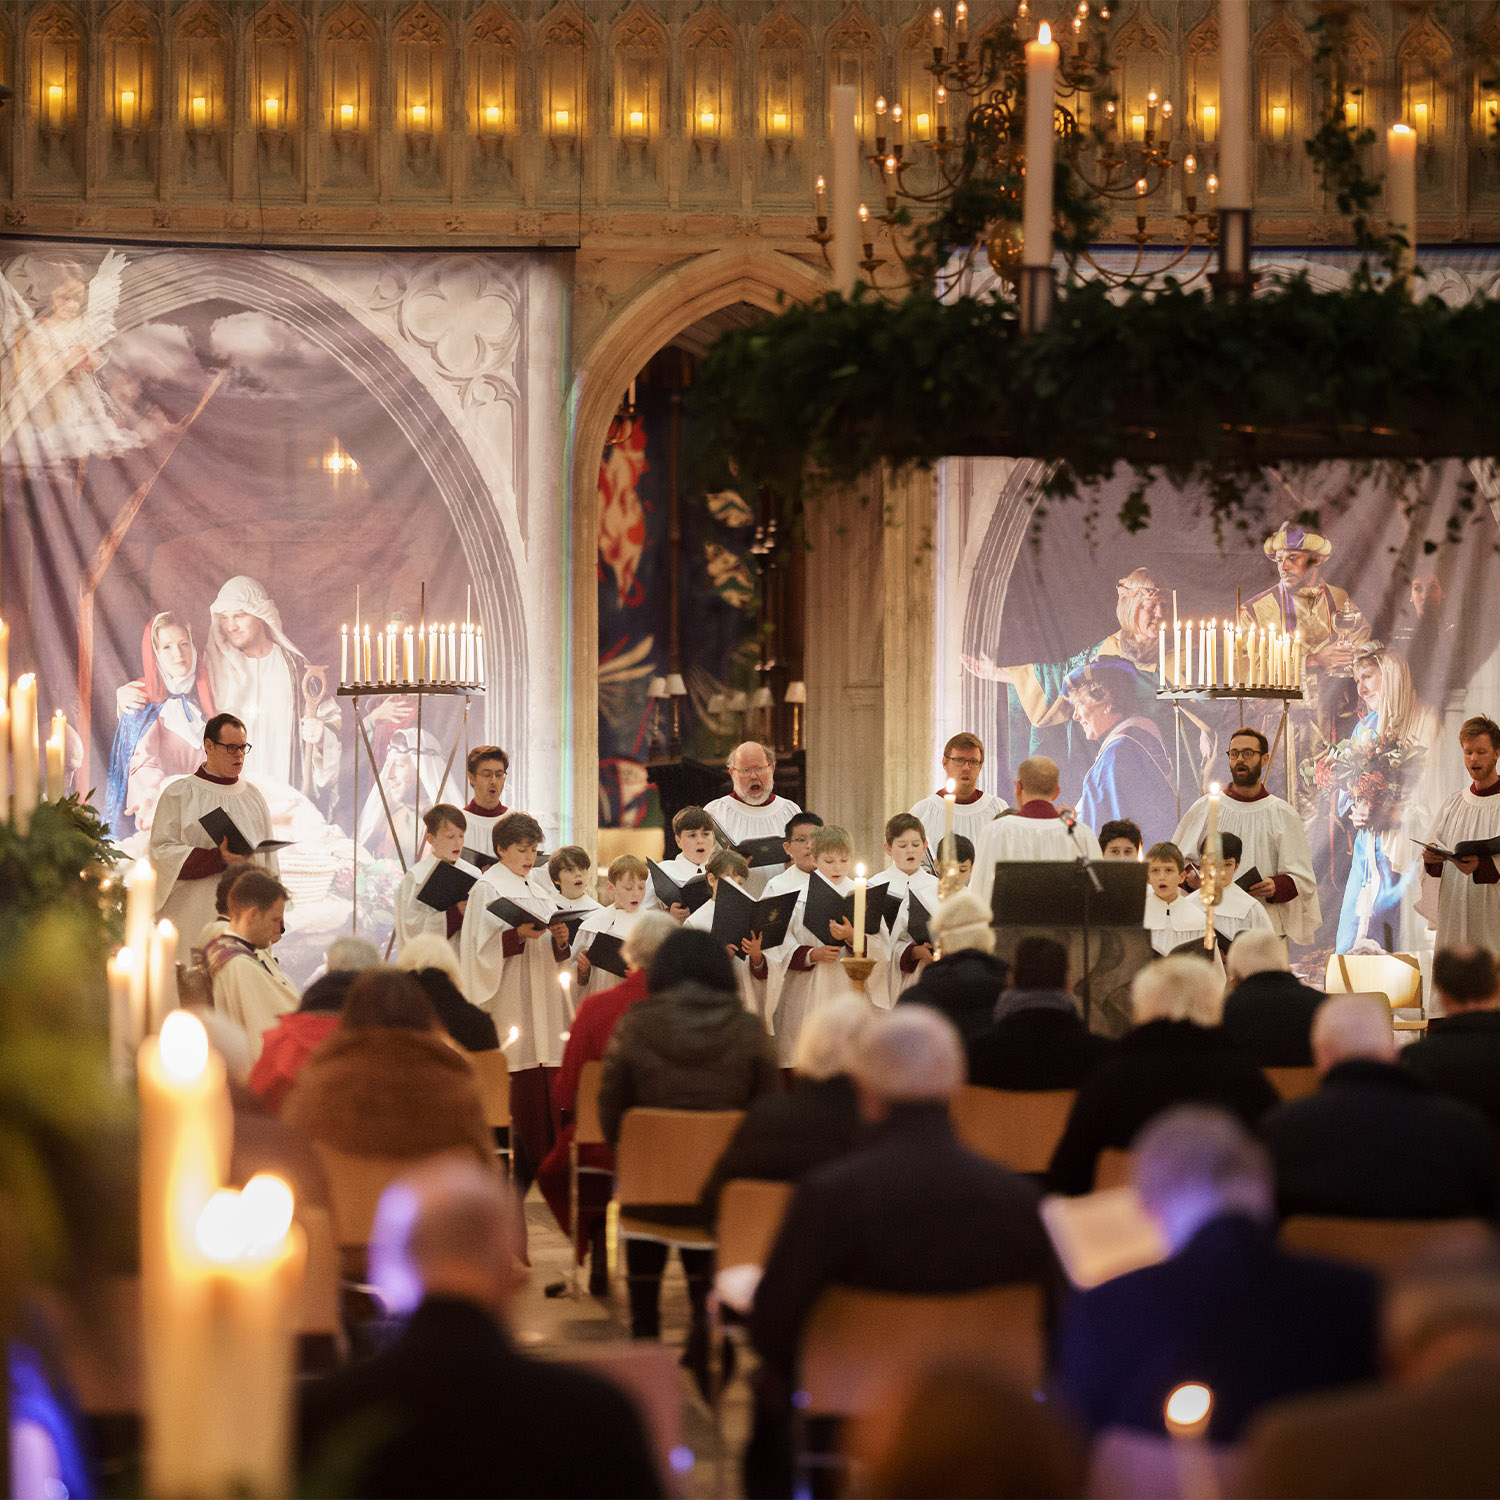 The Choir sing underneath the Advent Wreath